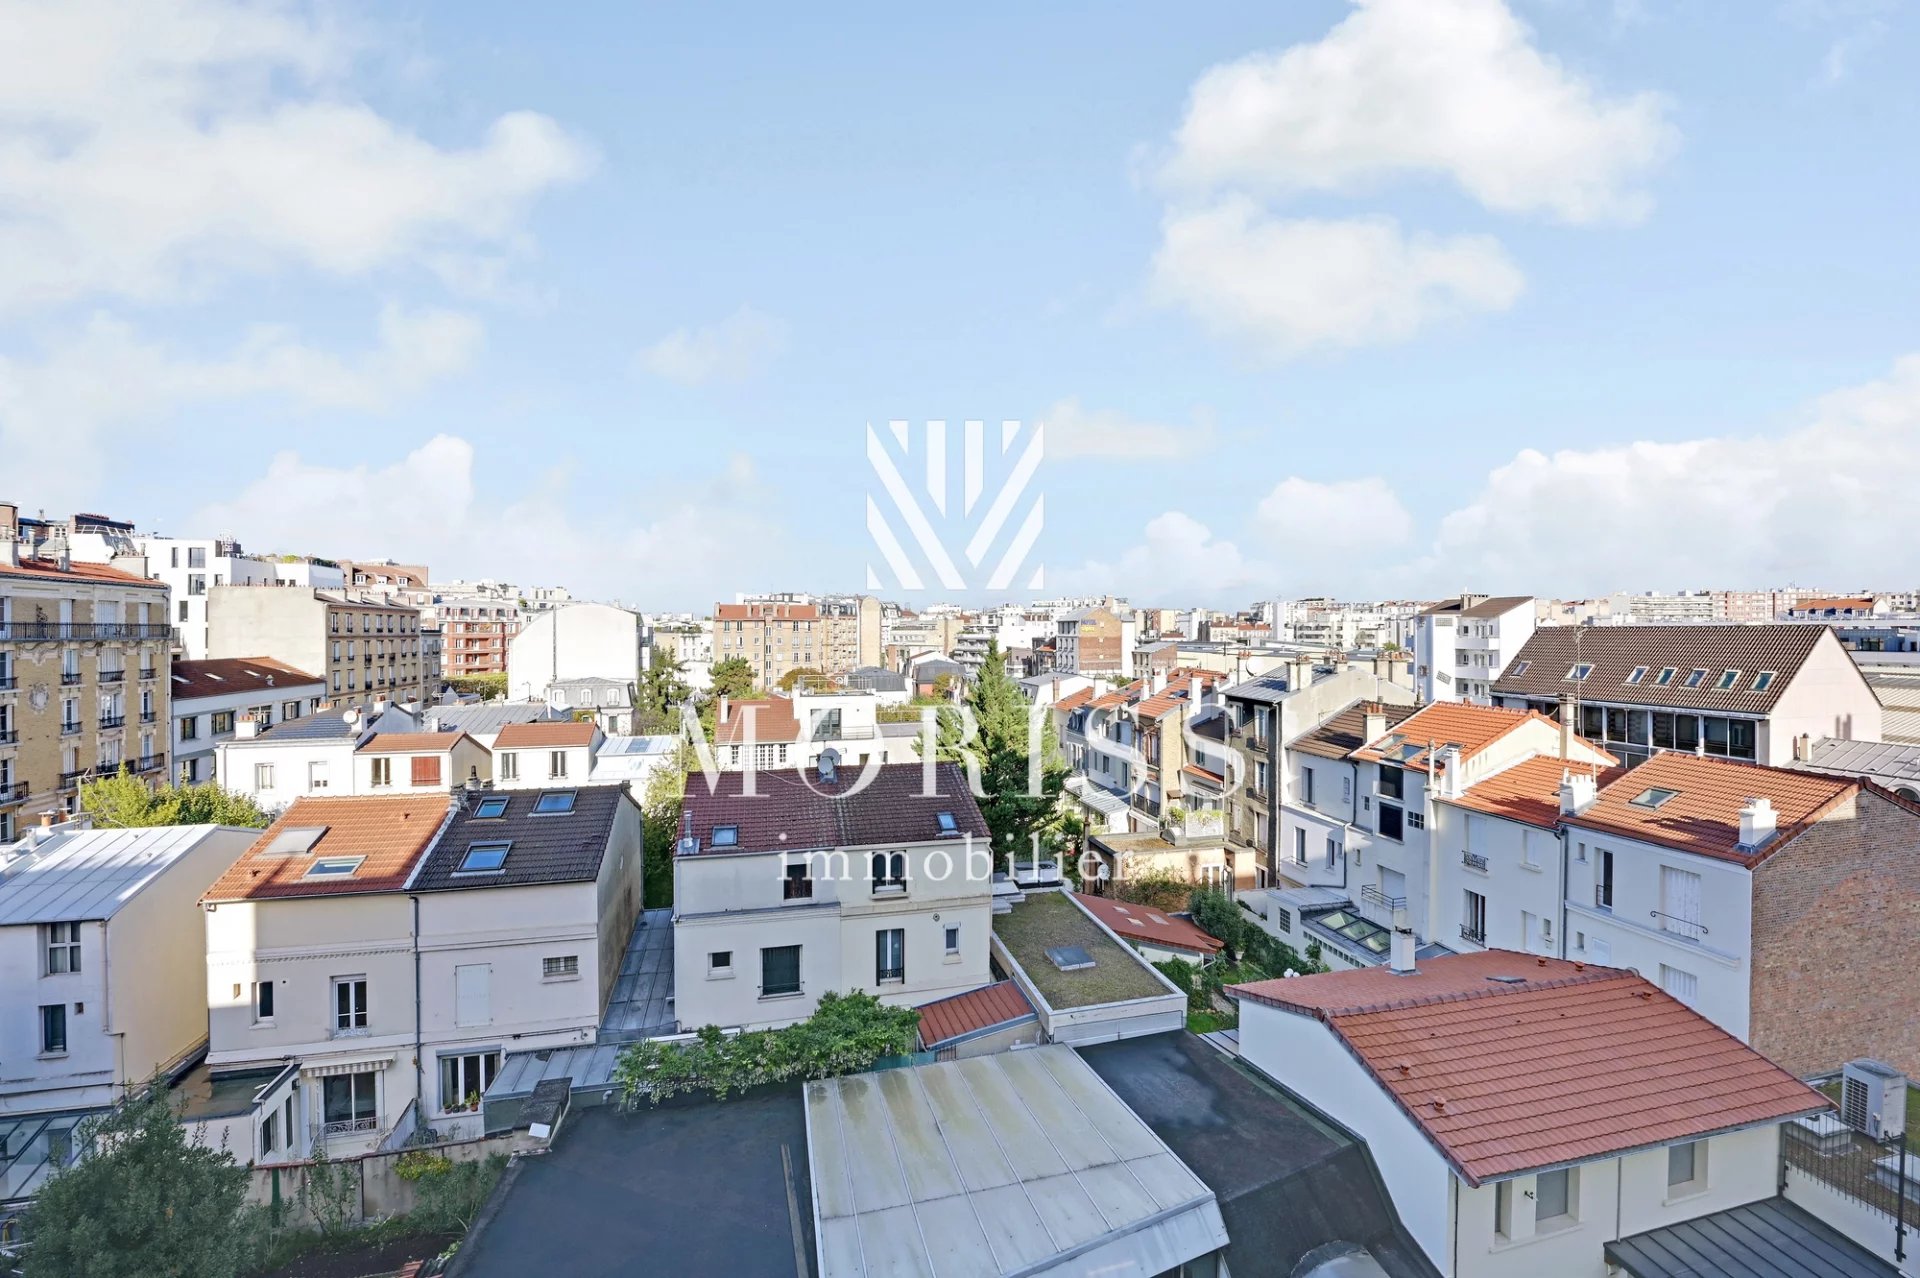 Appartement 3/4 Pieces - Balcons/ Boulogne - Image 1